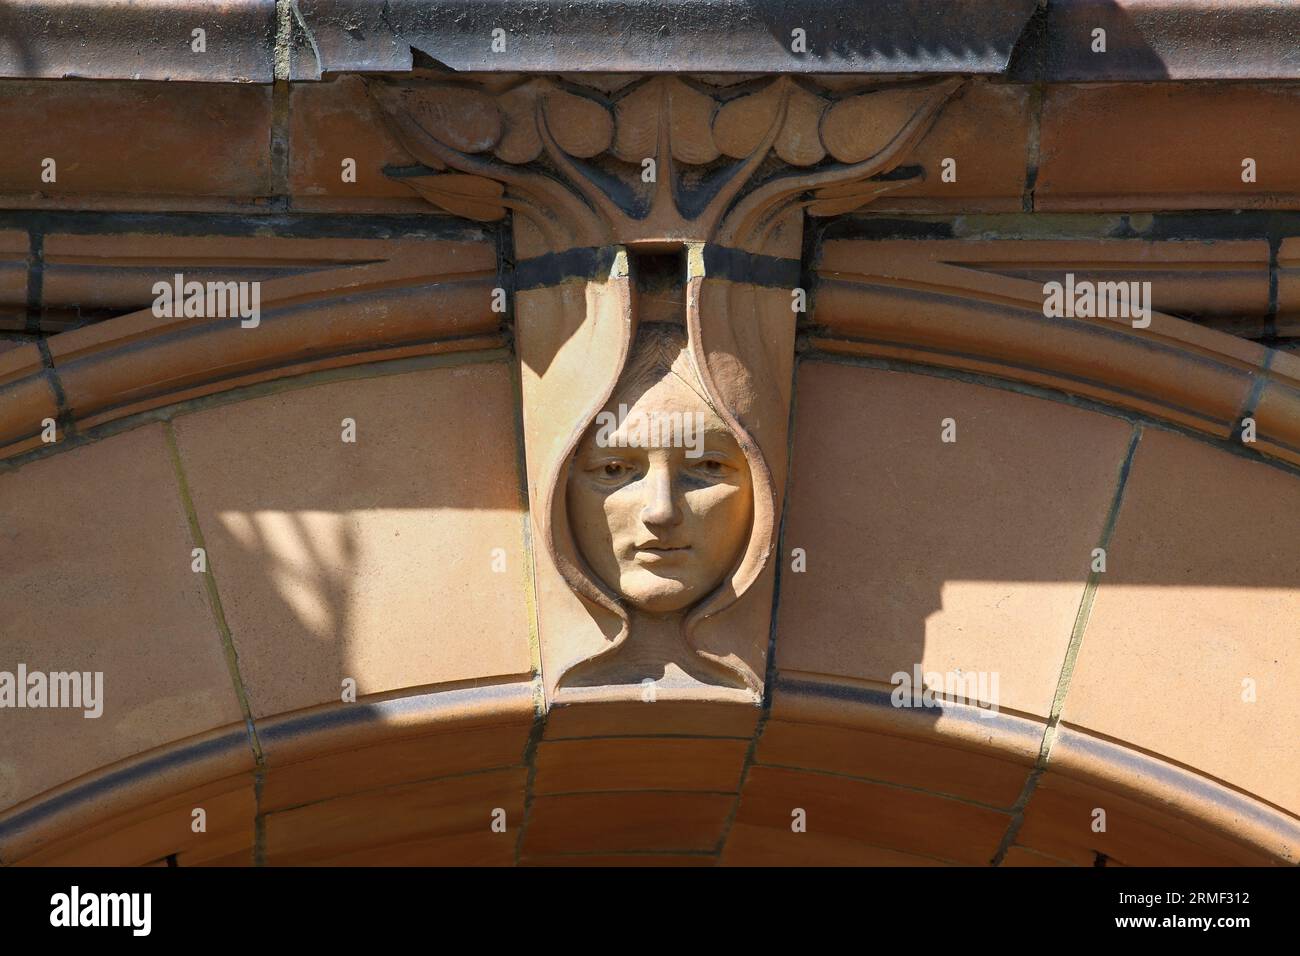 Nahaufnahme der Fassade des Great Yarmouth Hippodrome, die einen Bogenpfeiler in Form eines Jugendstilkopfes zeigt, der von Blättern eingerahmt ist. Stockfoto